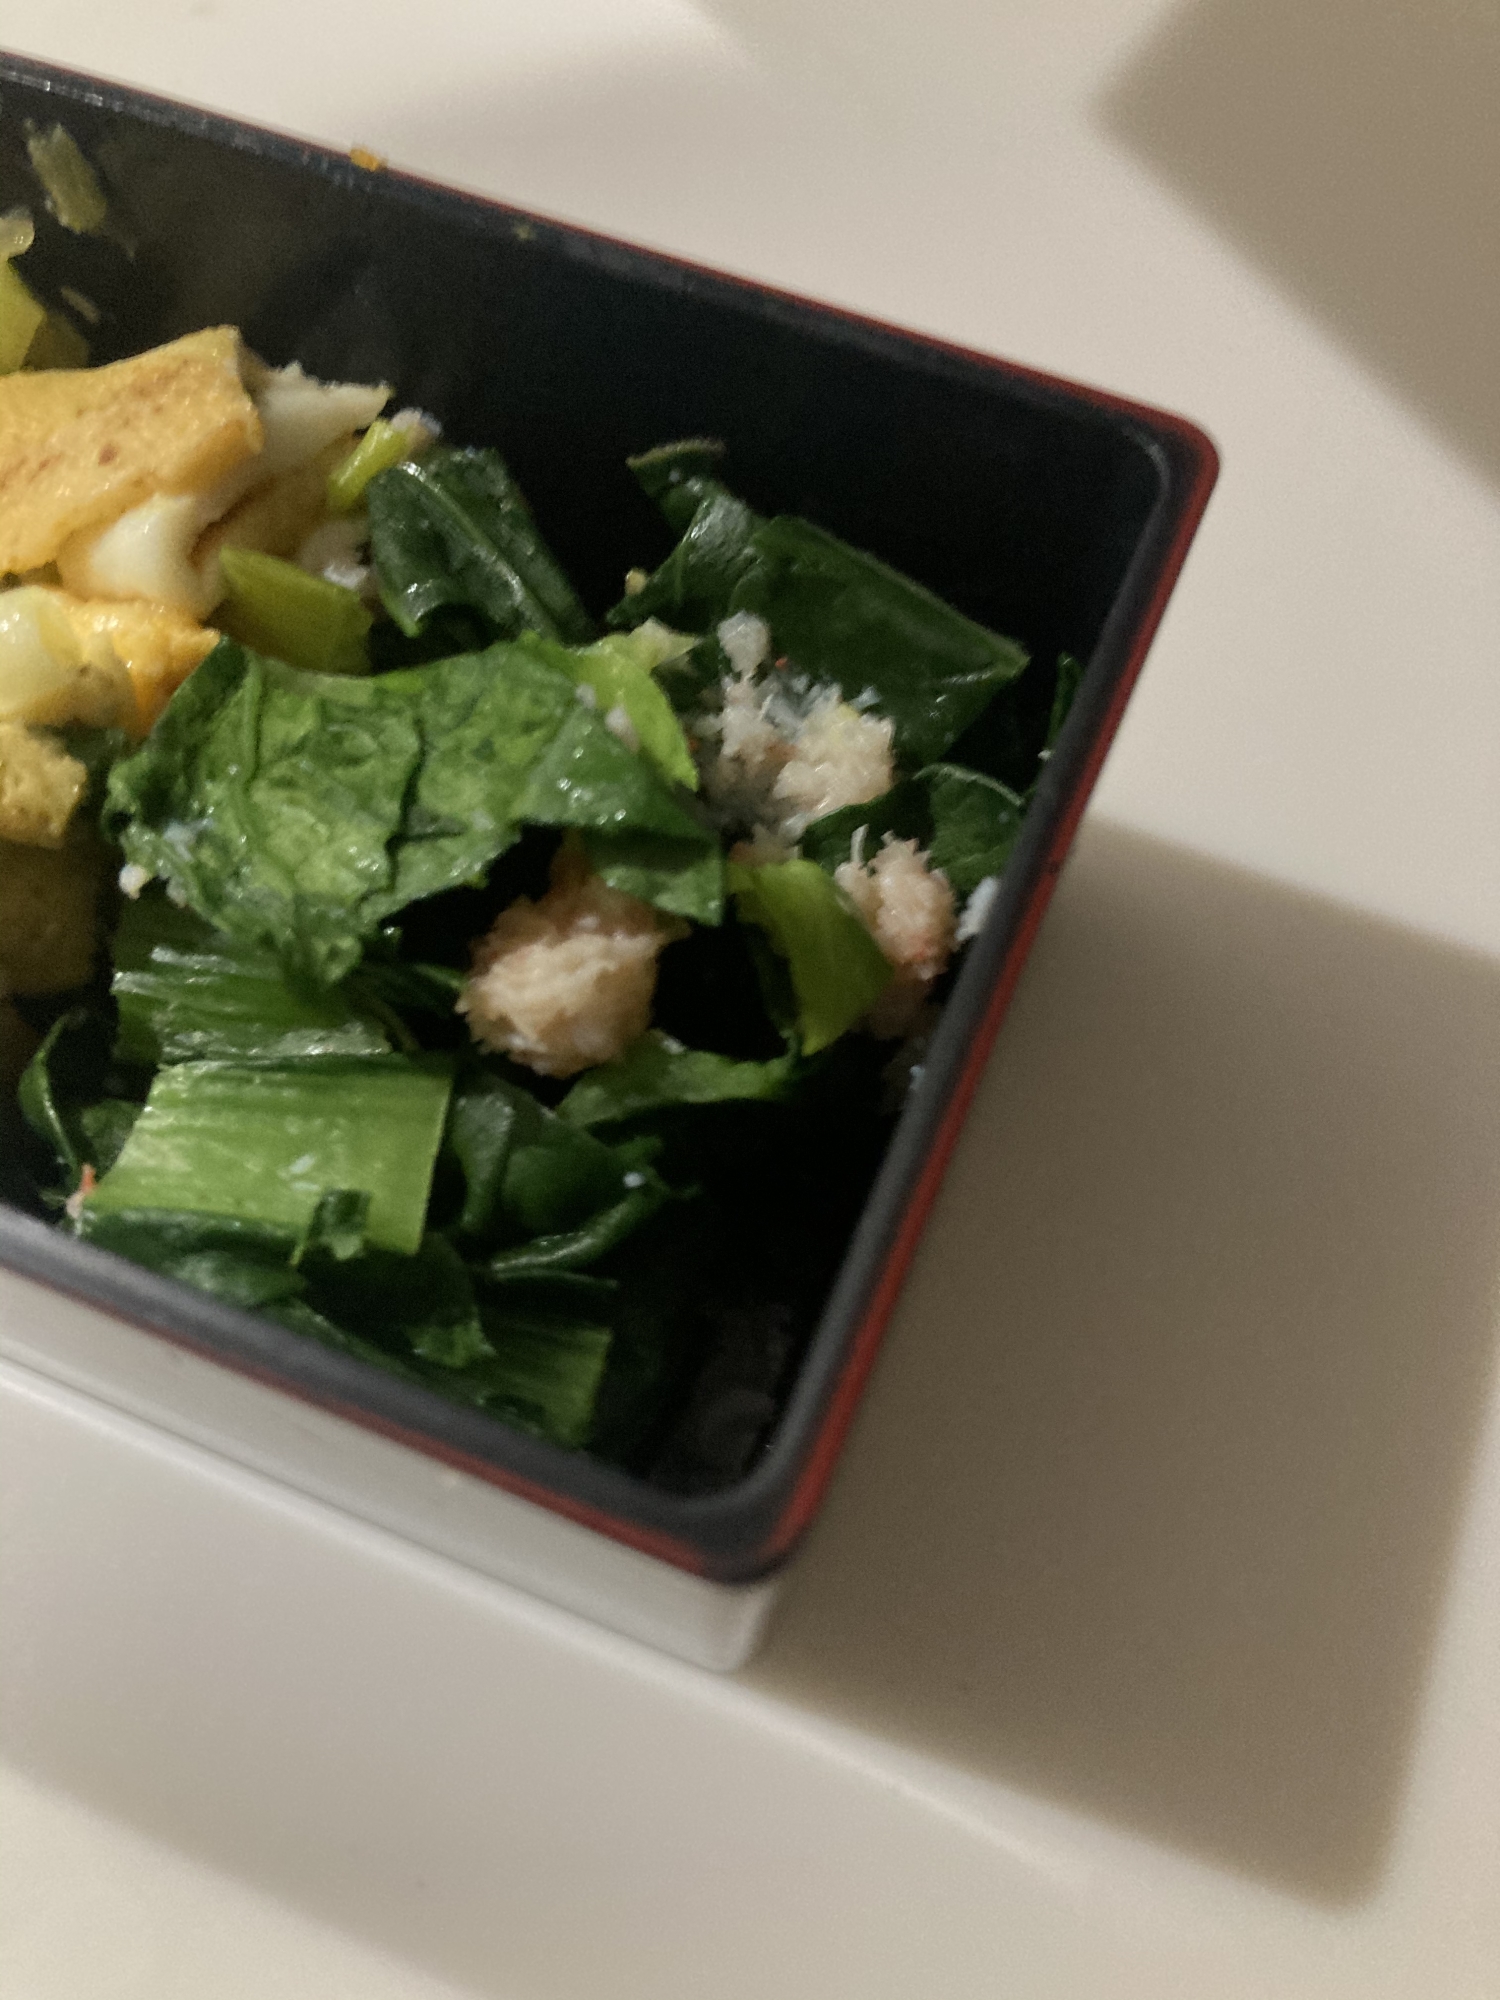 小松菜とカニ缶のサラダ